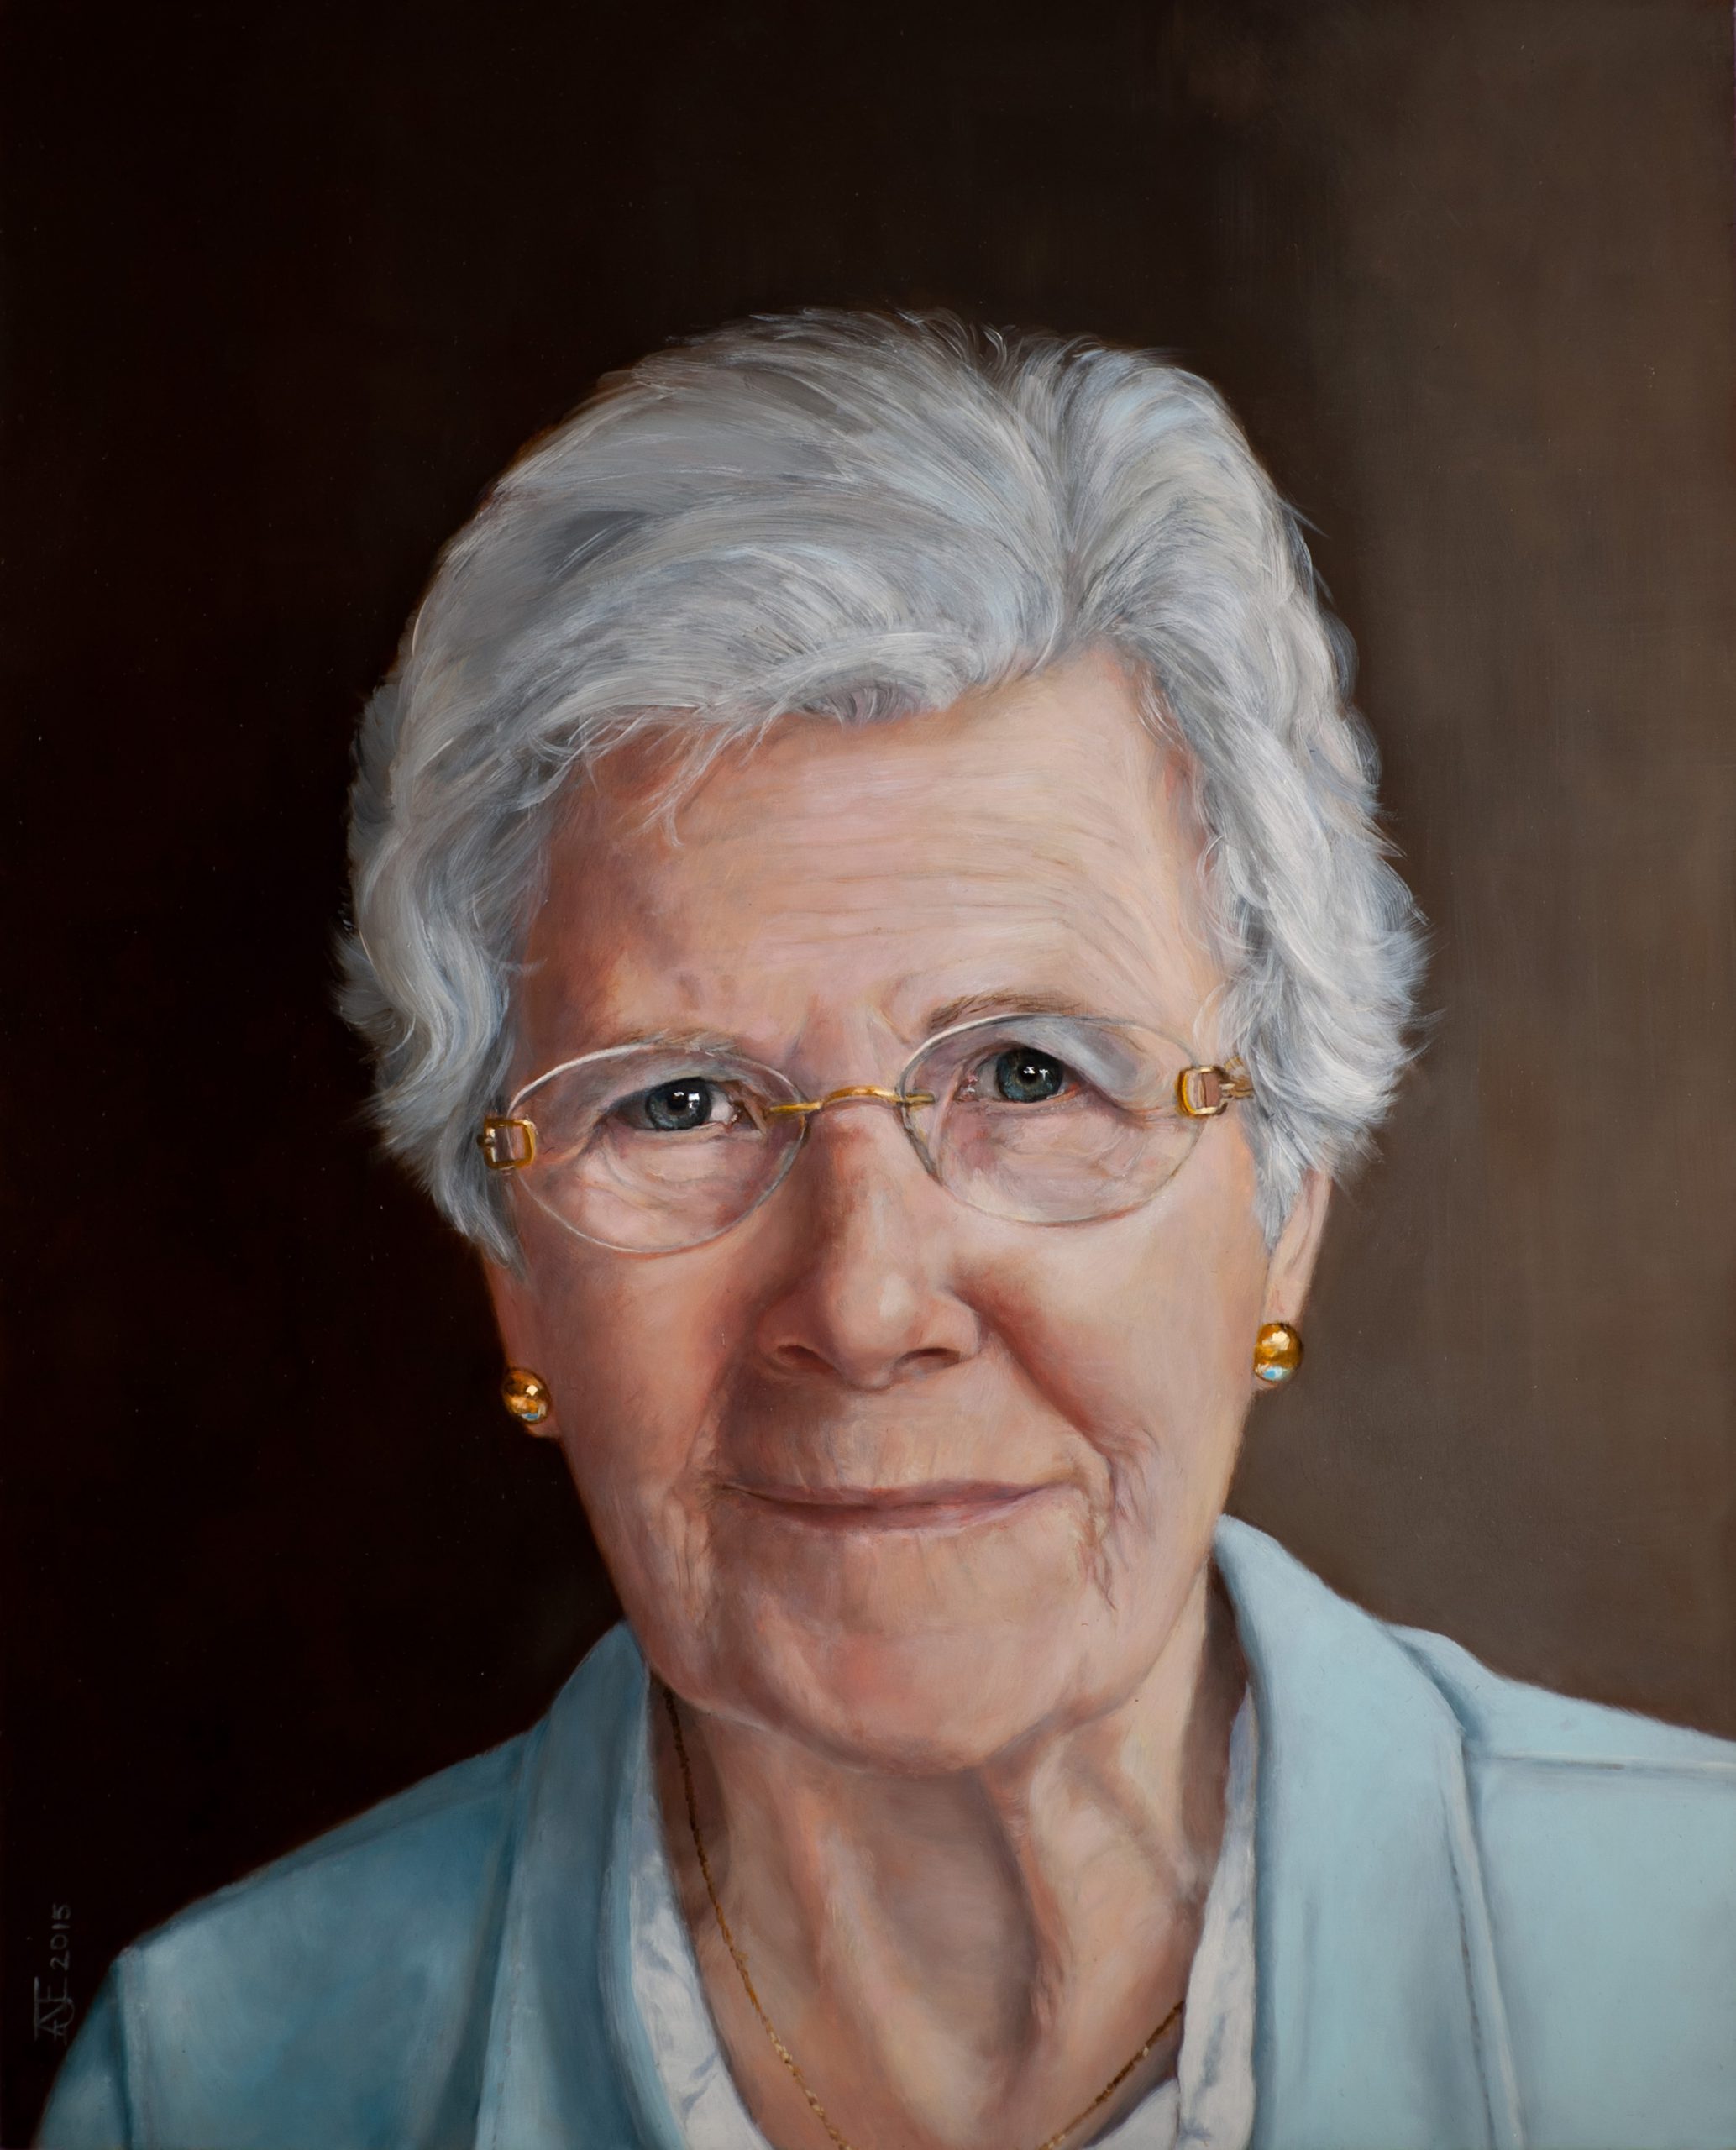 Een olieverfportret op een paneel van 40 x 50 cm, in opdracht geschilderd, toont een oudere vrouw met grijs haar genaamd Toos tegen een bruine achtergrond. Dit kunstwerk is in 2015 geschilderd door portretschilder Anneke Ensing.